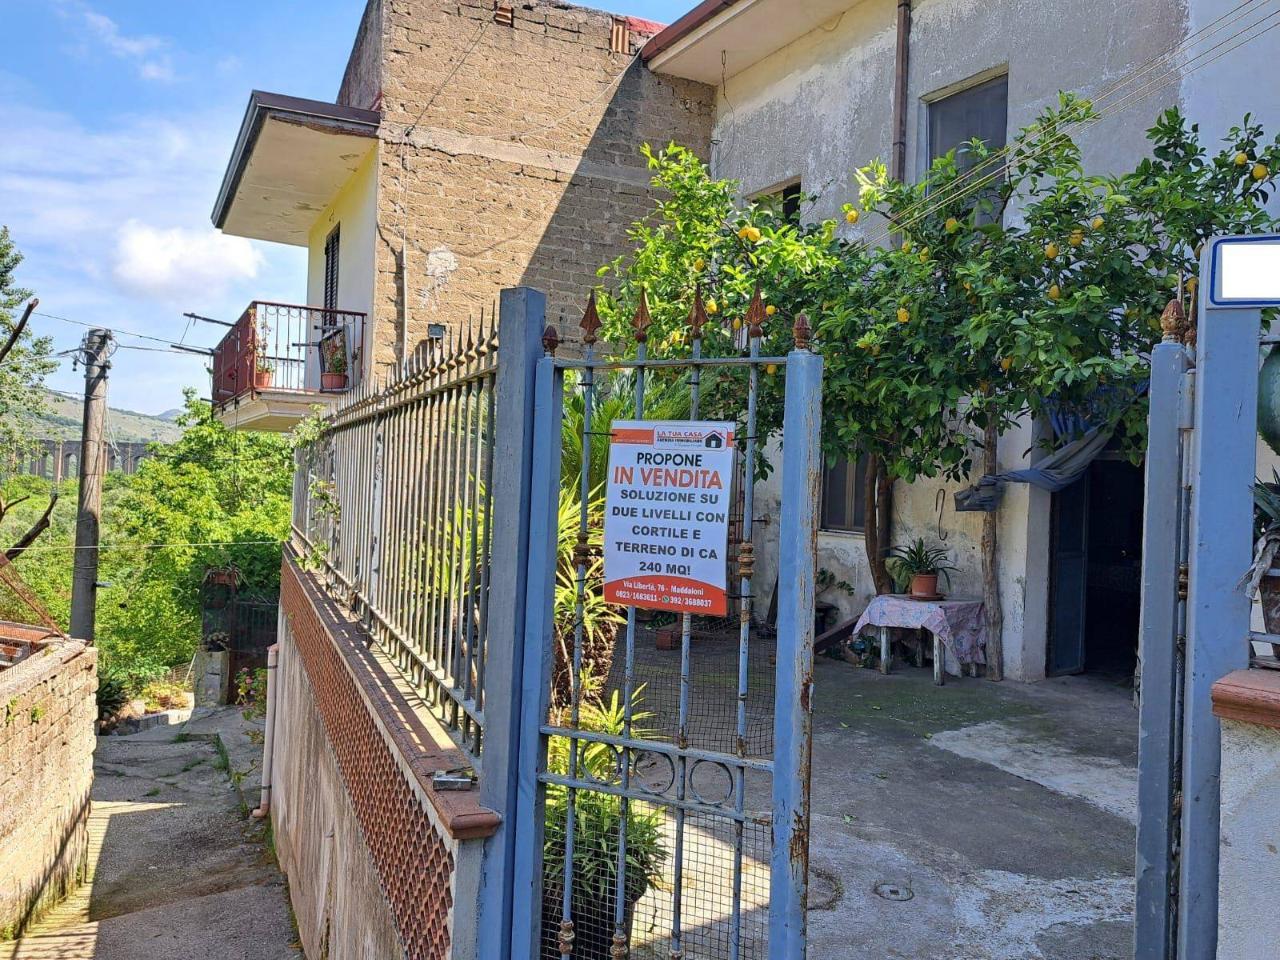 Casa indipendente in vendita a Maddaloni